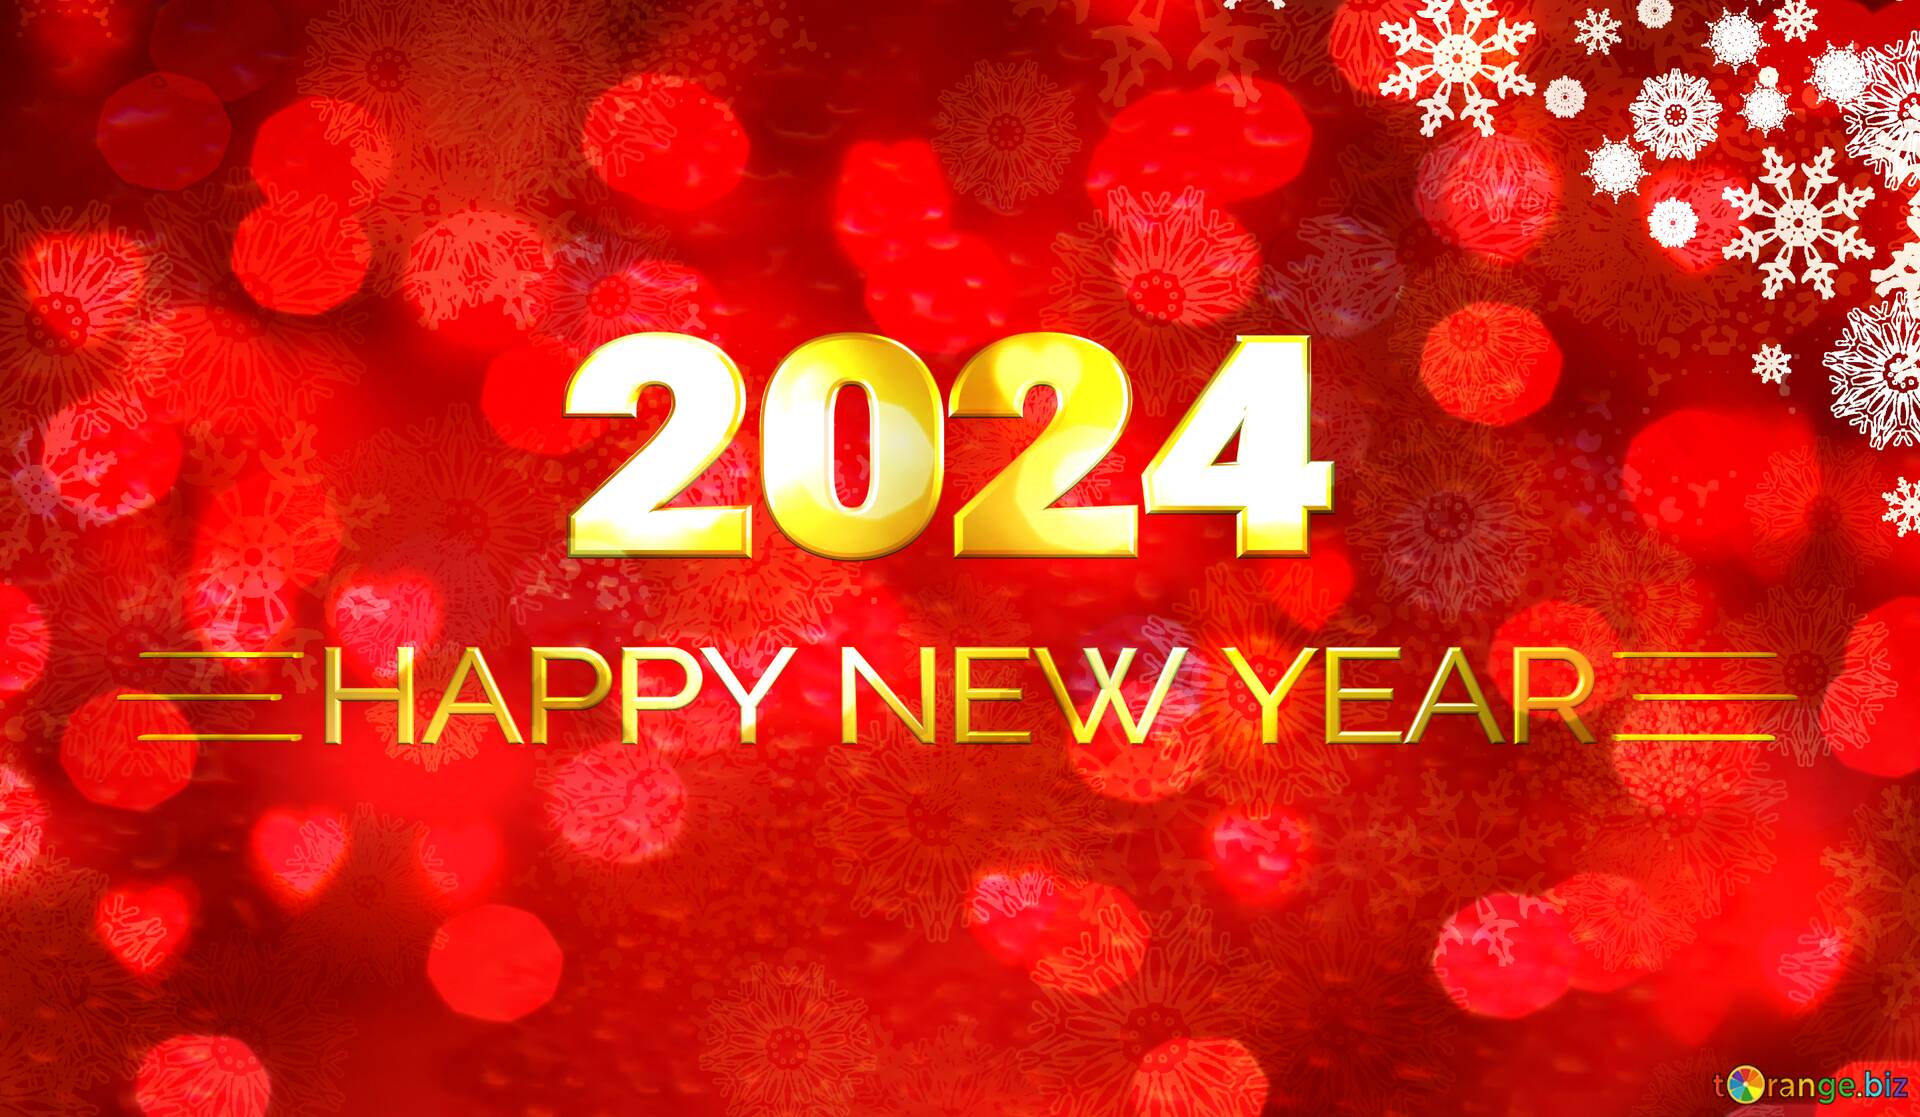 New year 2024. Новый год 2024 мюзикл. Новый год 2024 Грузия. Happy New year 2024. Новый год 2024 год подготовка